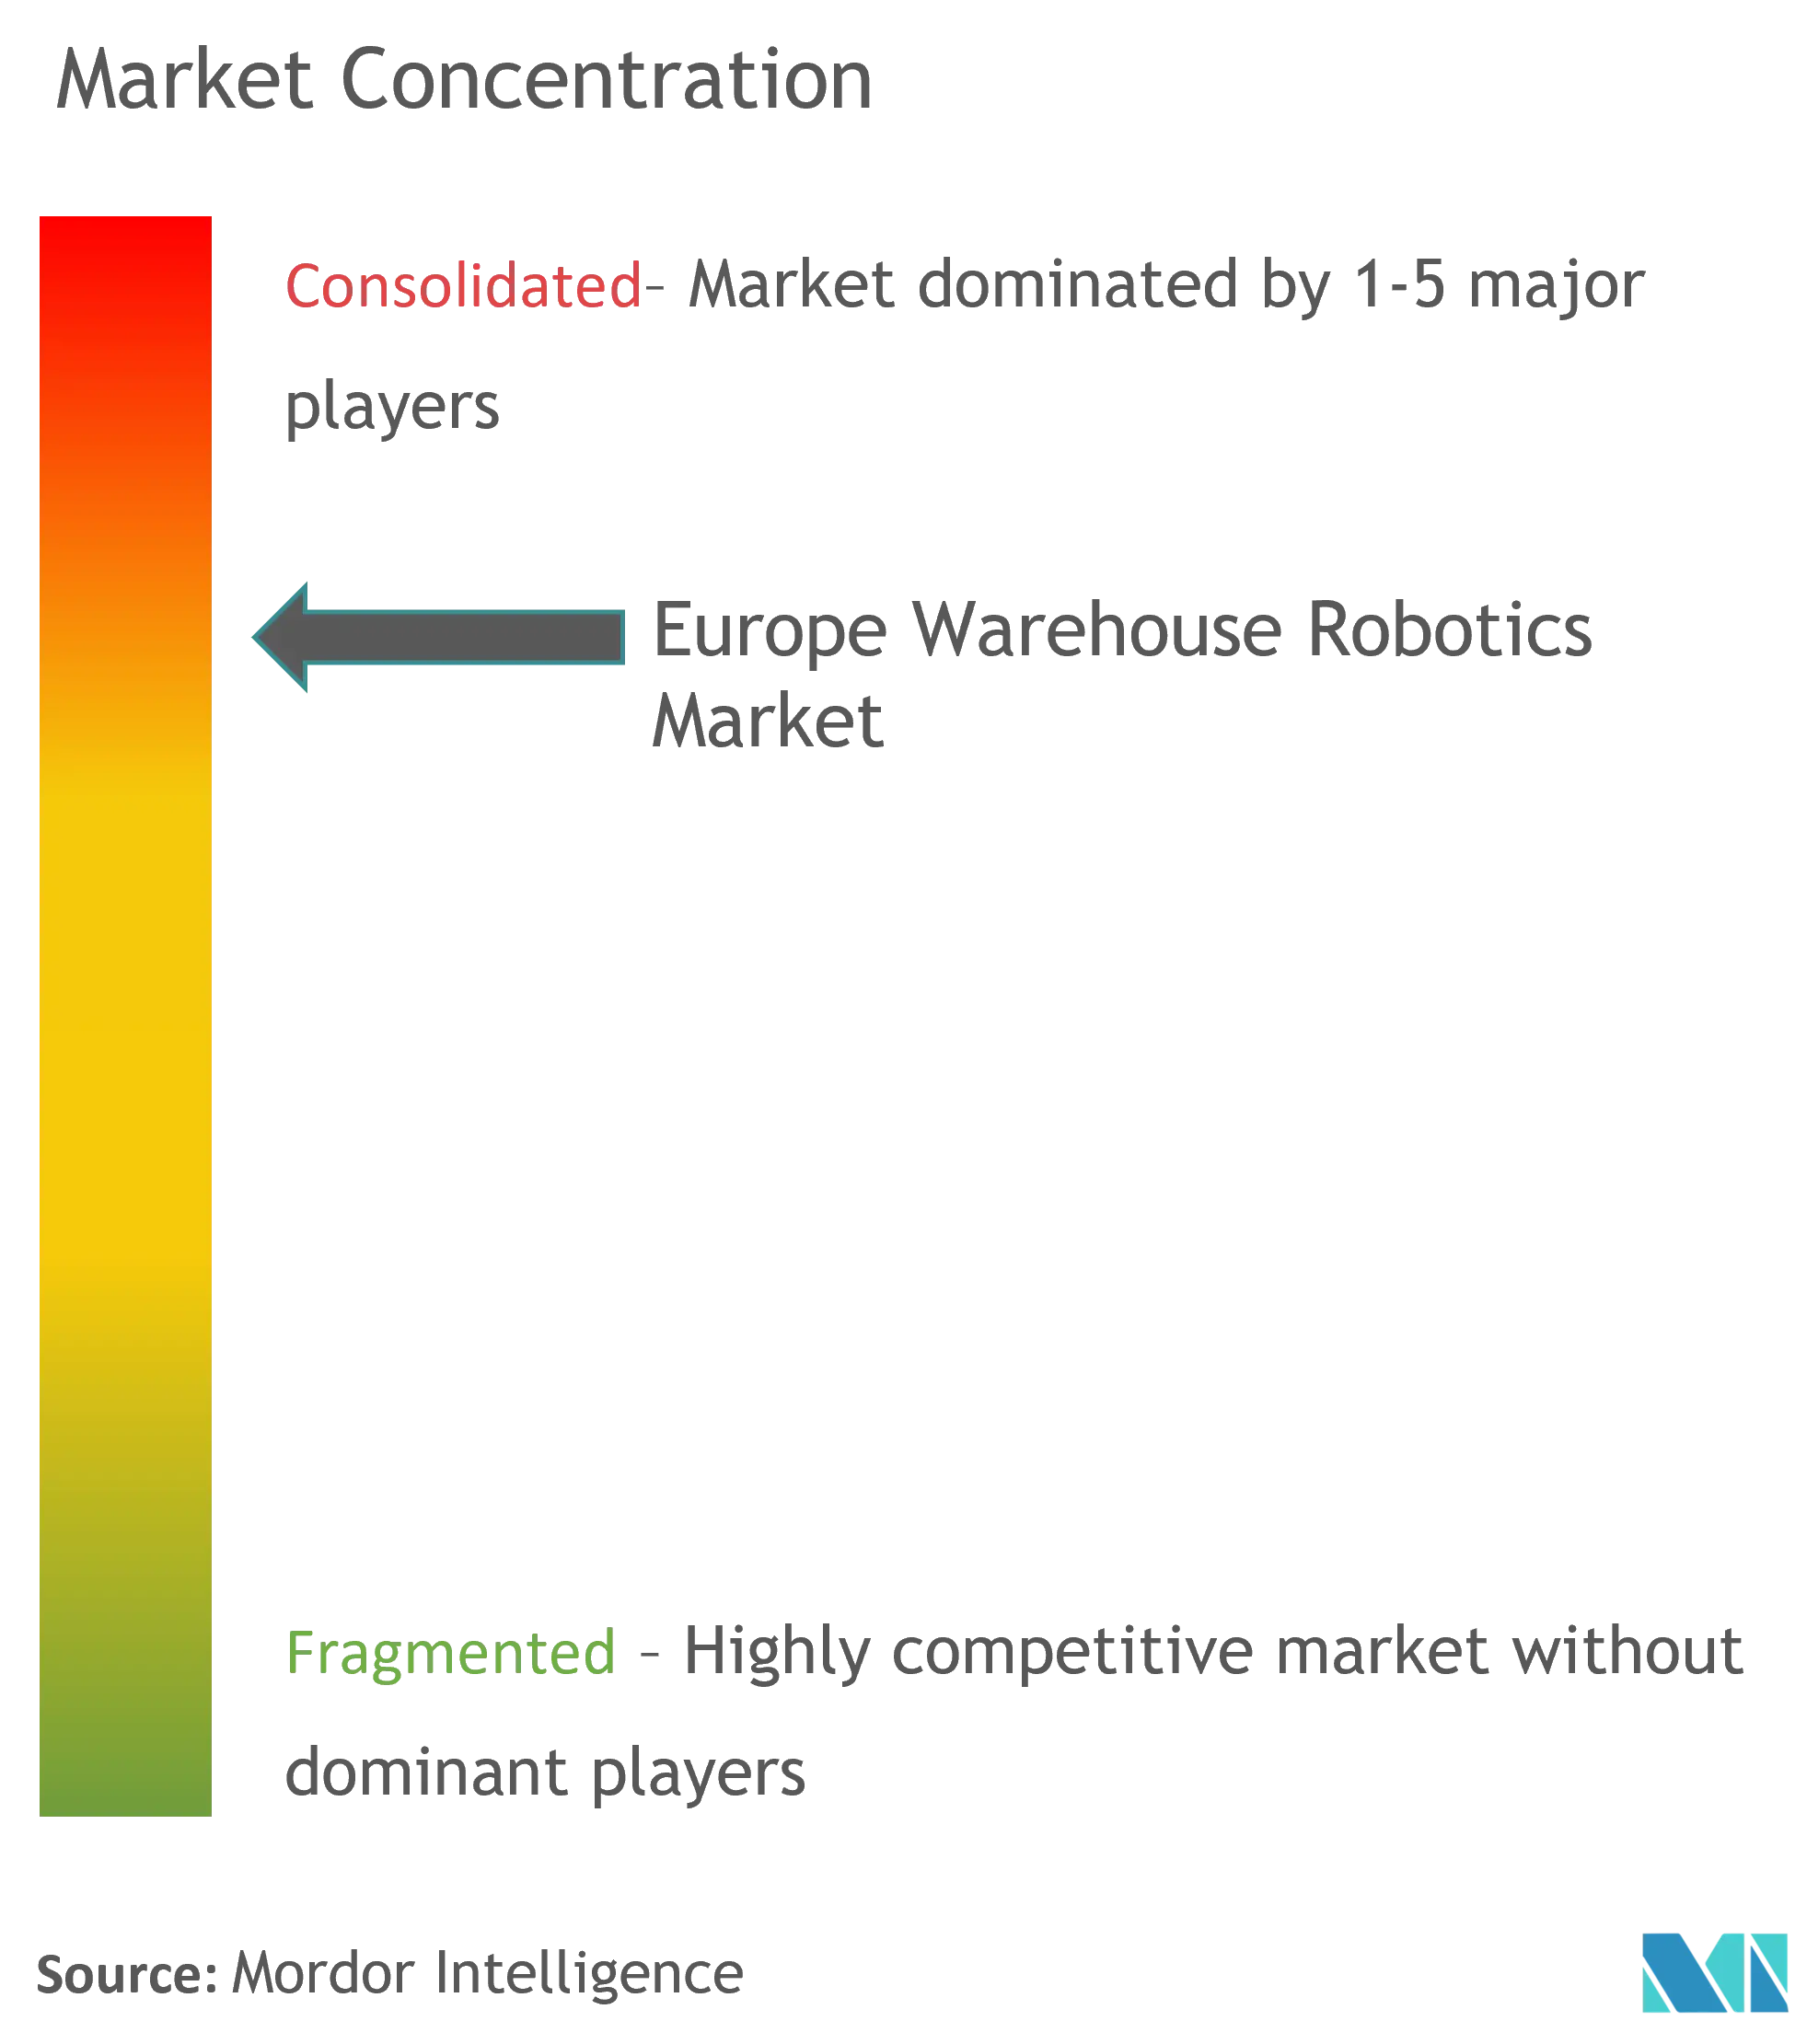 Concentration du marché de la robotique dentrepôt en Europe